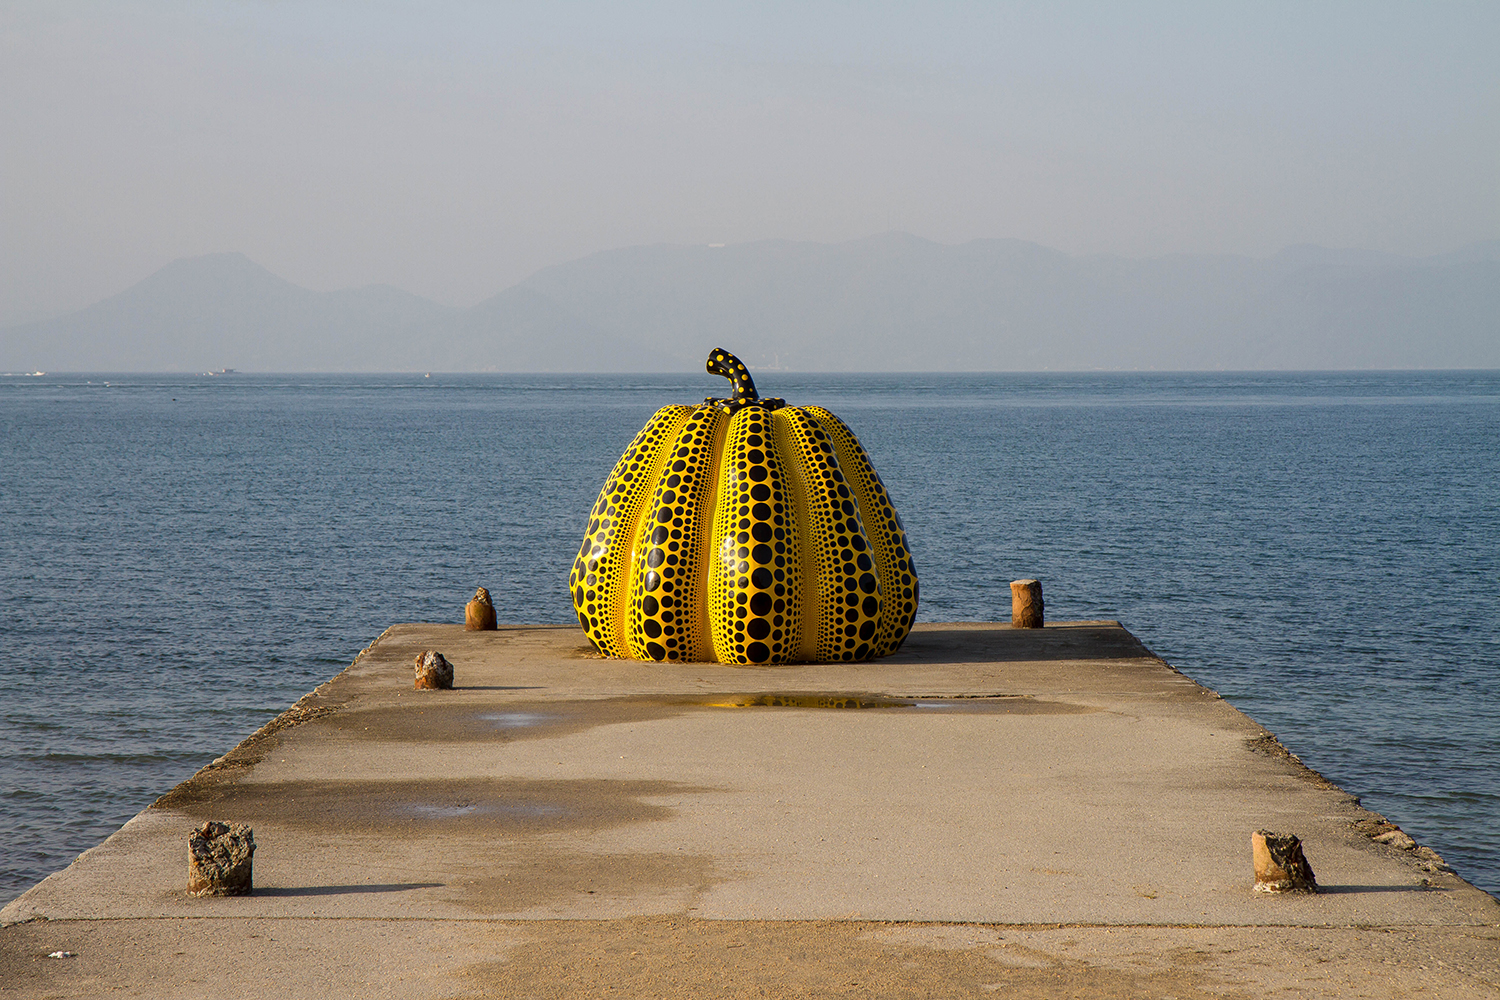 Yayoi Kusama's 'Yellow Pumpkin' sculpture returned to its perch on